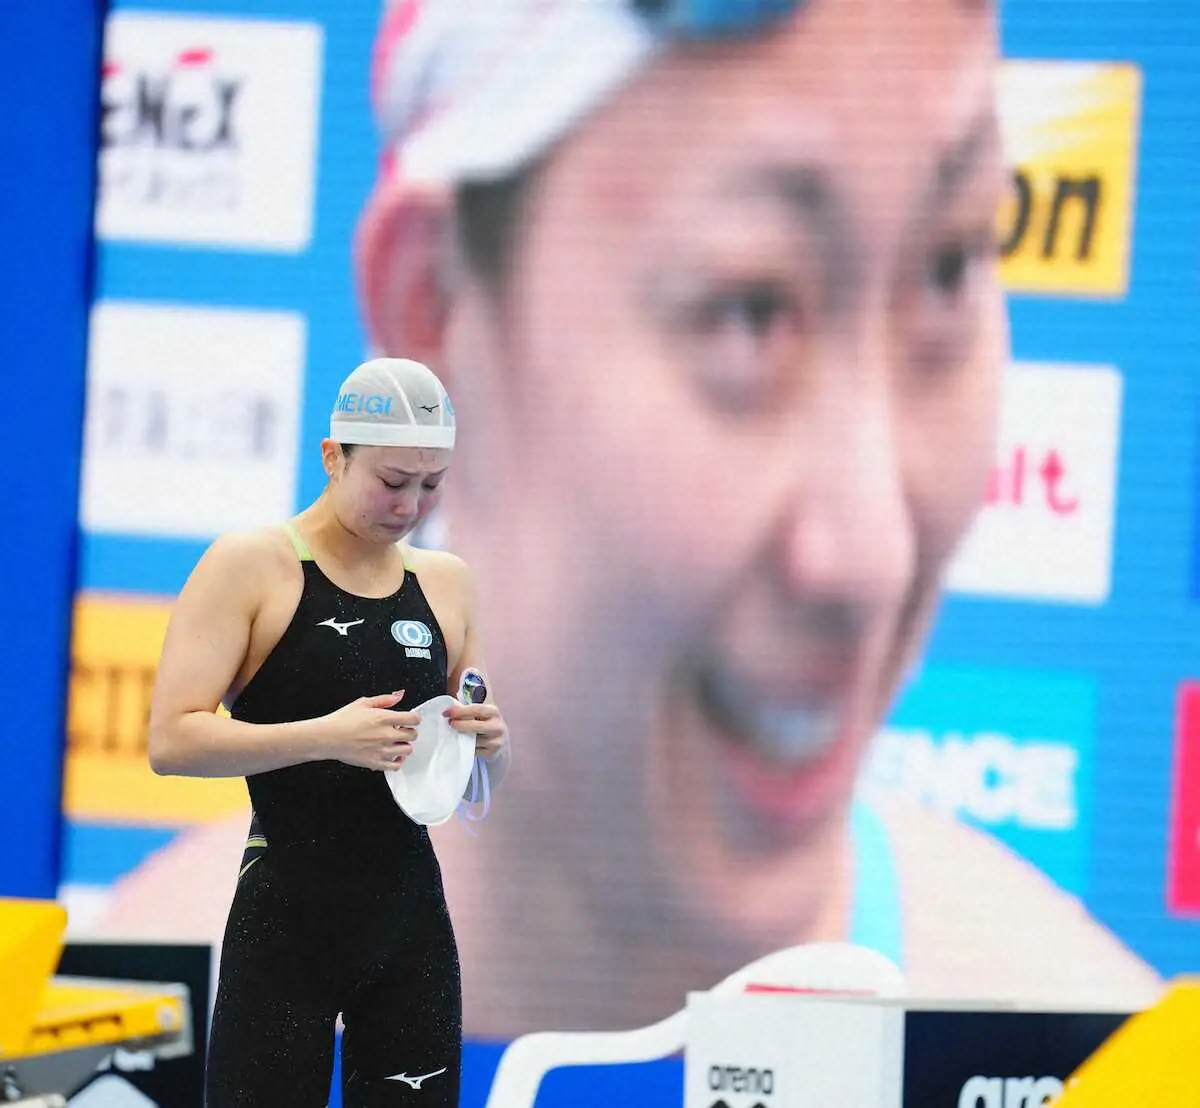 渡部香生子　無念の涙…0秒24届かずパリ切符逃す　日本女子水泳界初の快挙ならず　鈴木聡美が代表